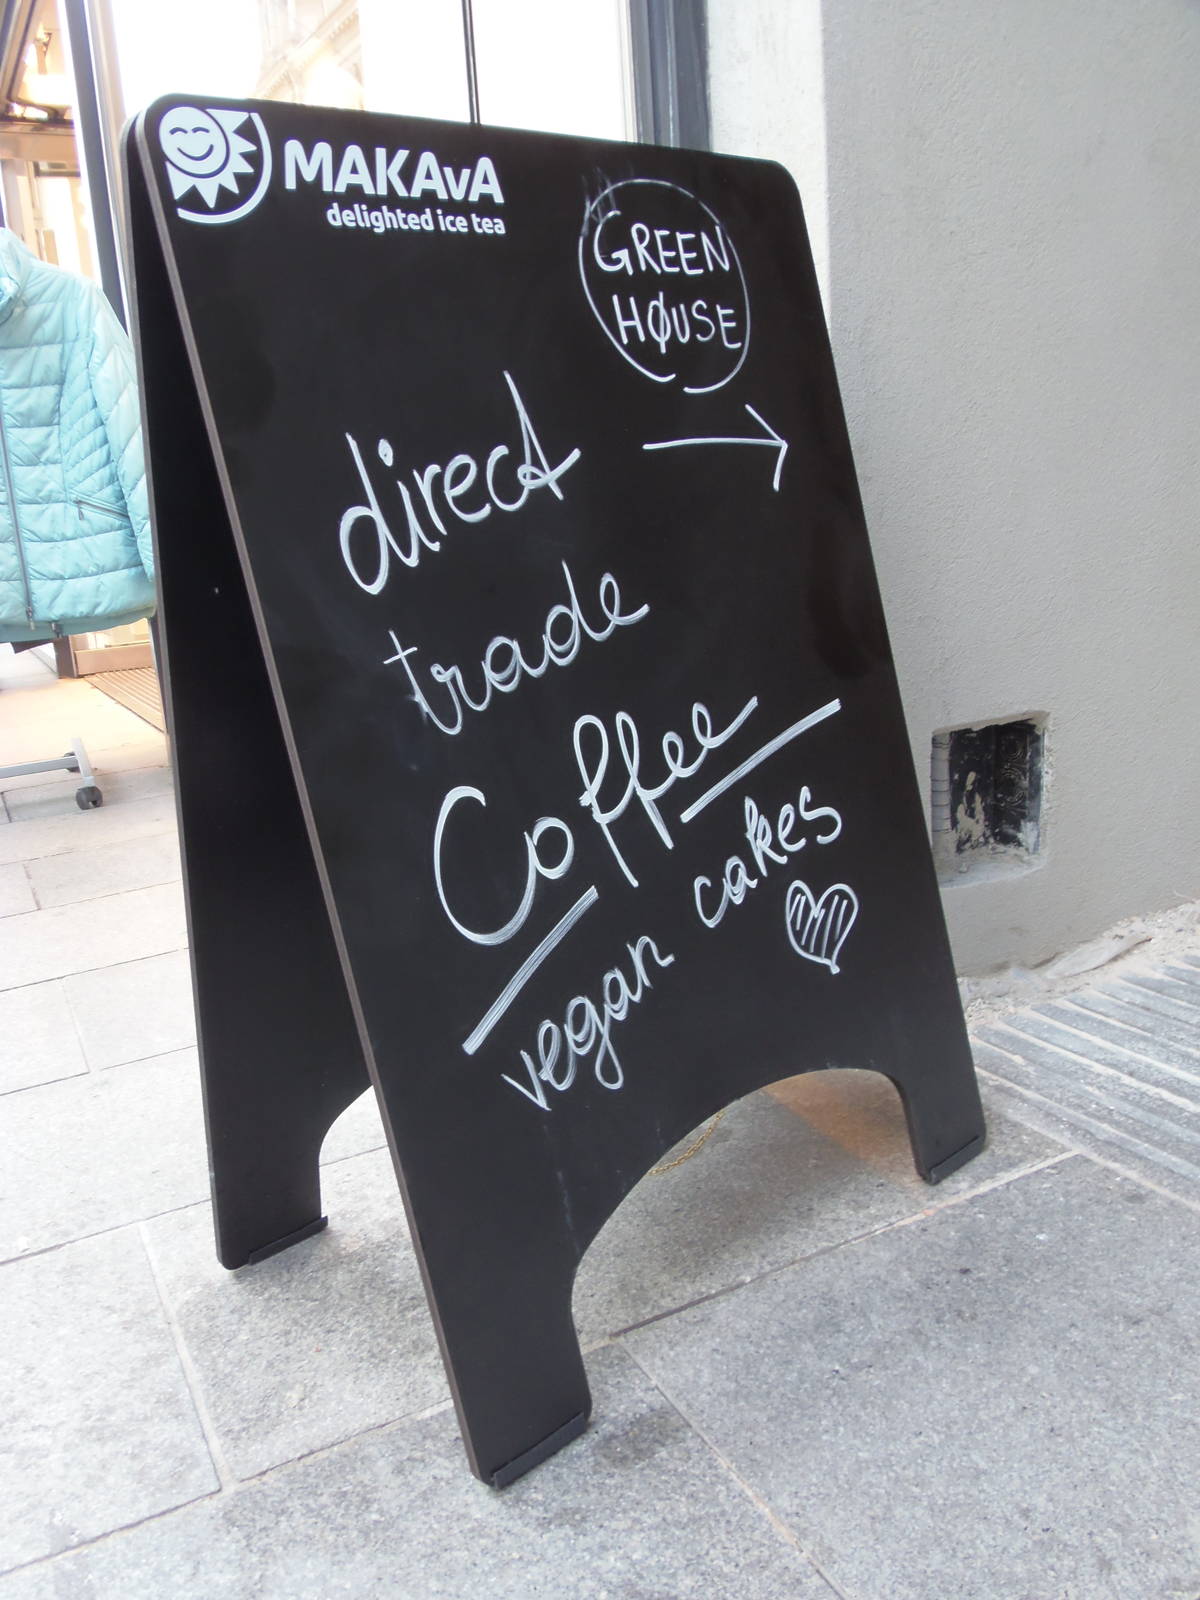 Unsere Empfehlung für ein gutes Café in Graz